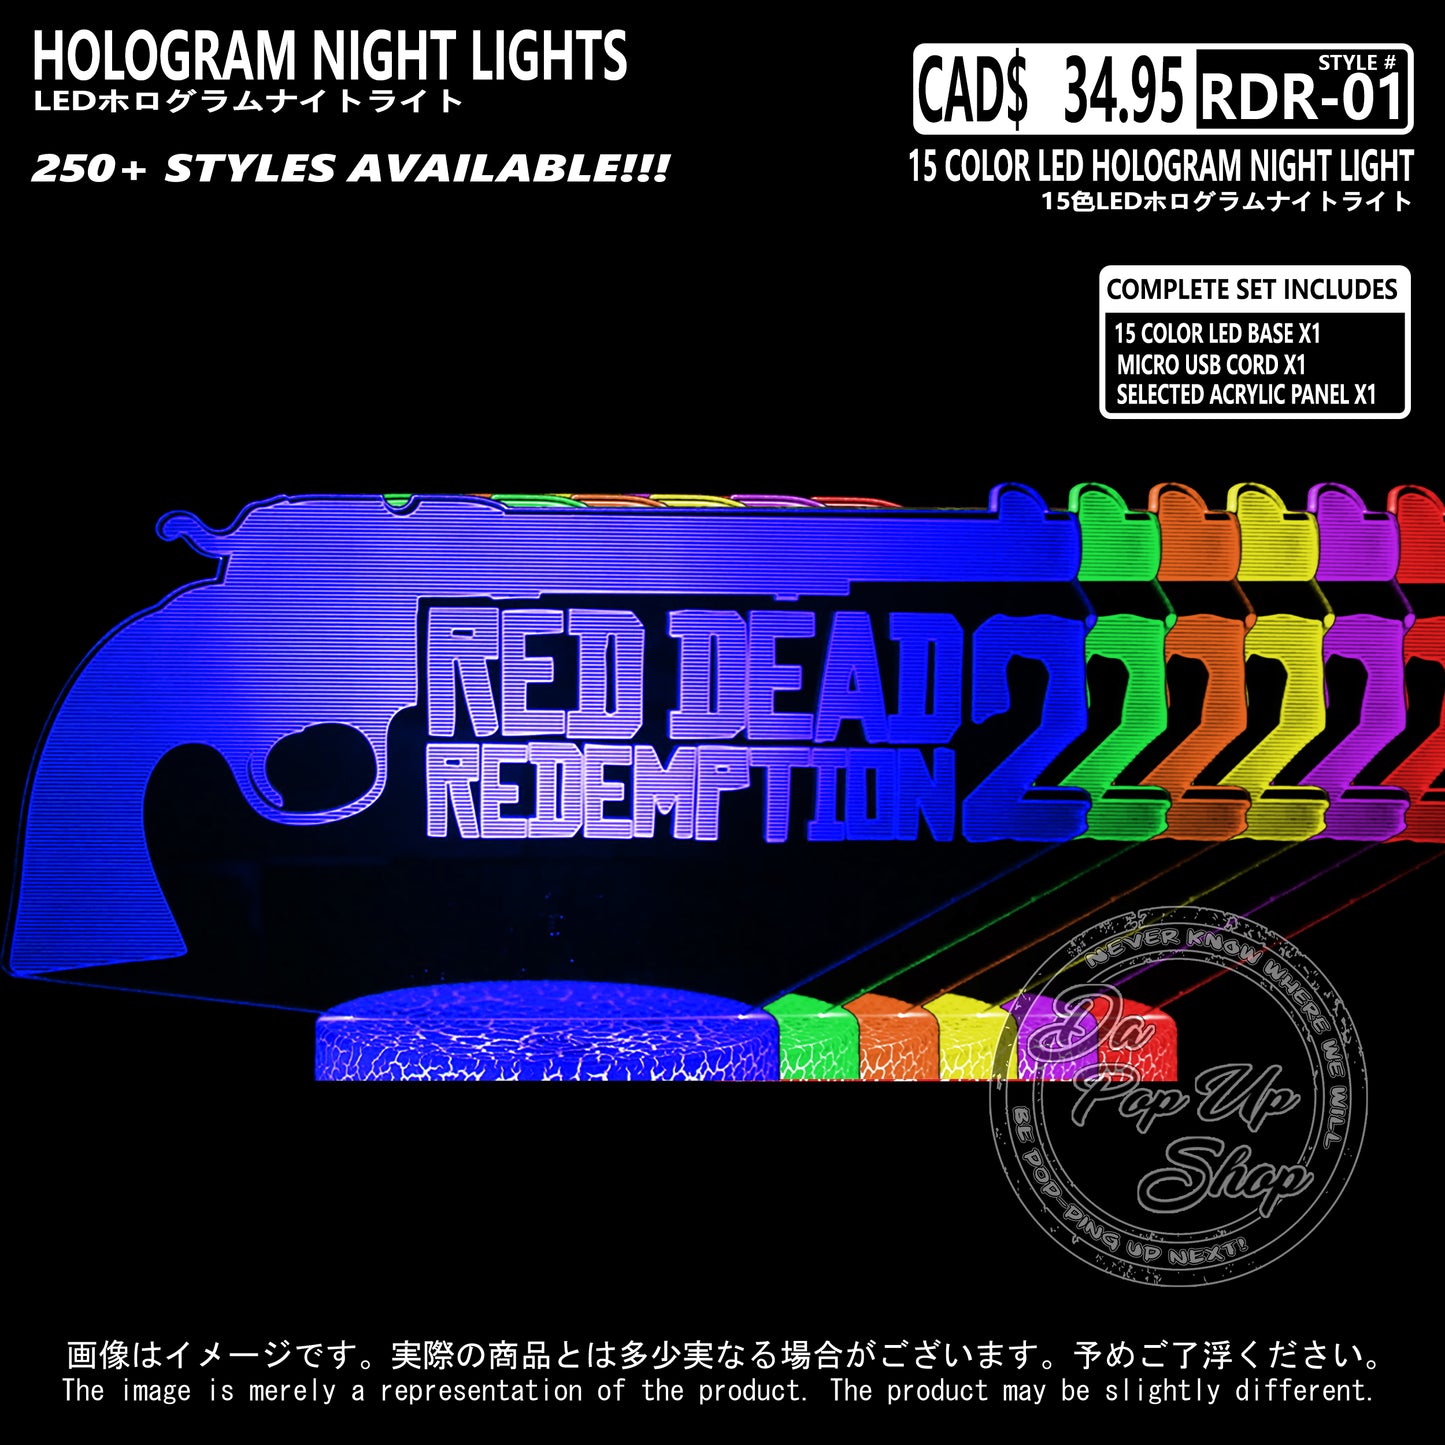 (RDR-01) Red Dead Redemption Hologram LED Night Light